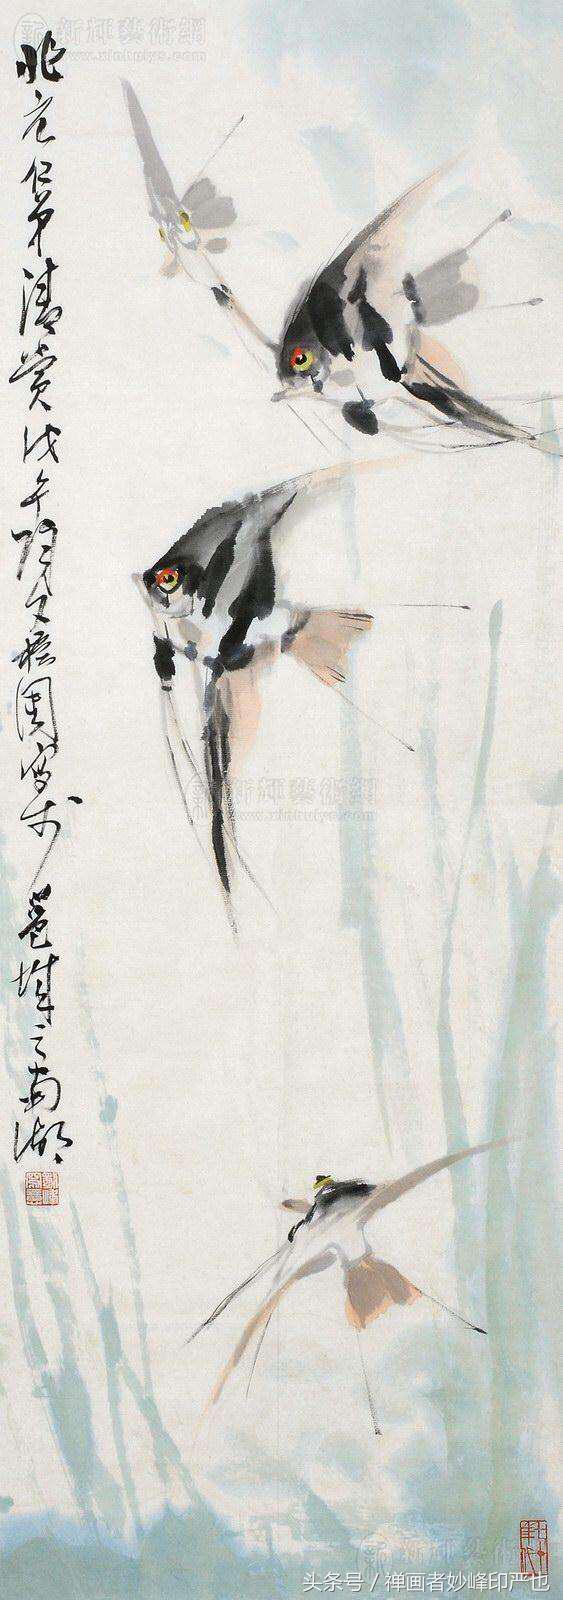 水墨画神仙鱼图片